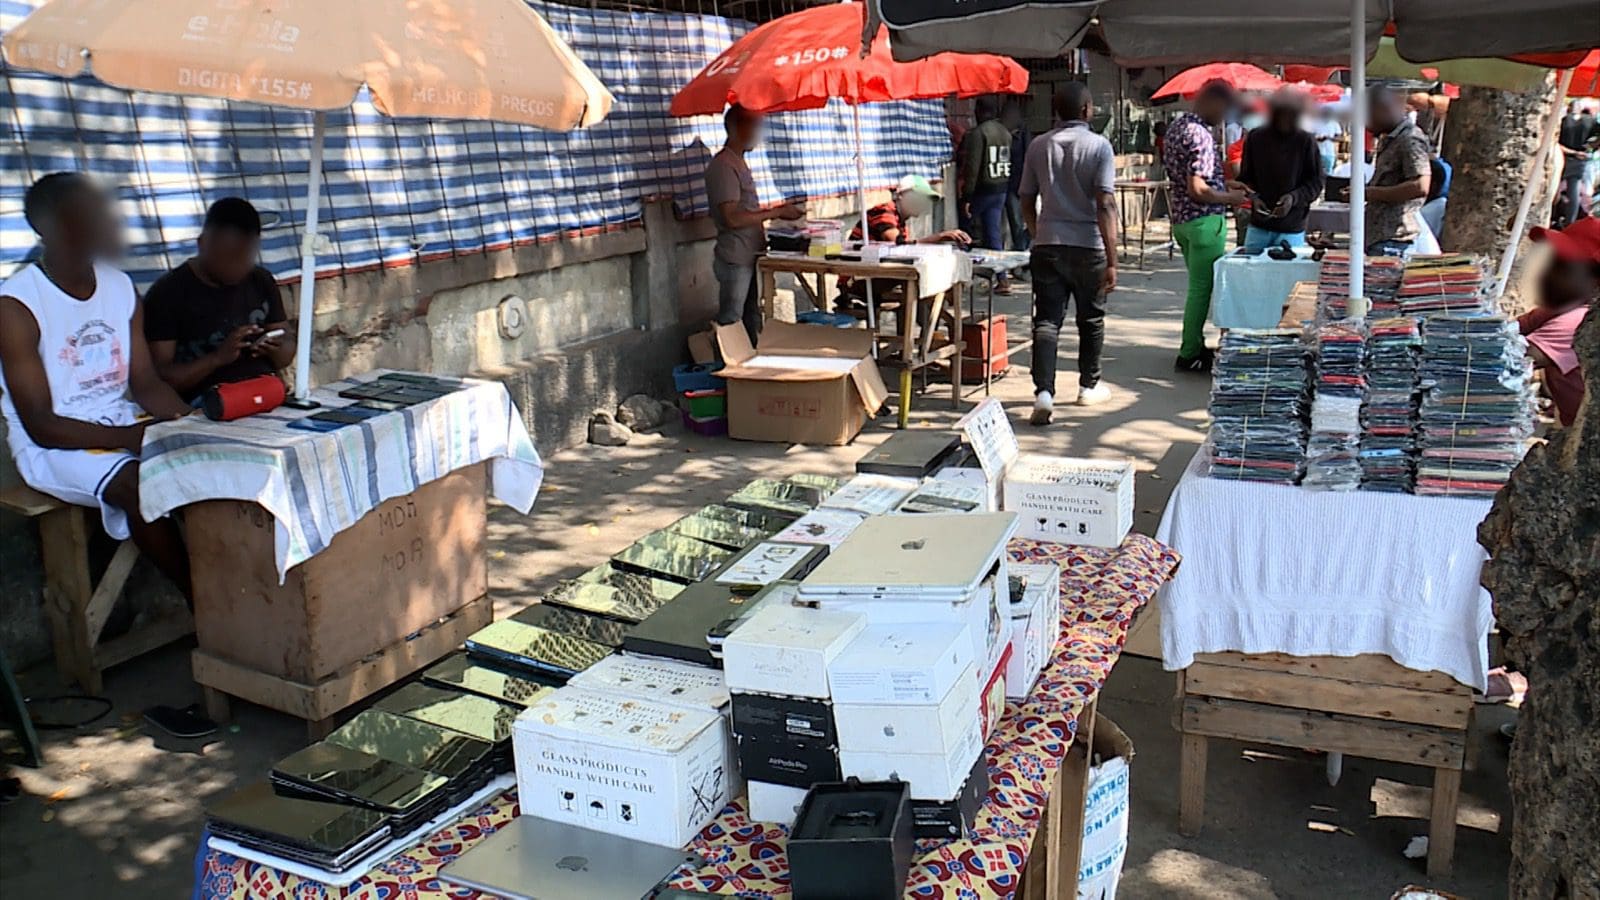 Comerciantes e "Nhonguistas" no mercado estrela acusam a polícia de perseguição